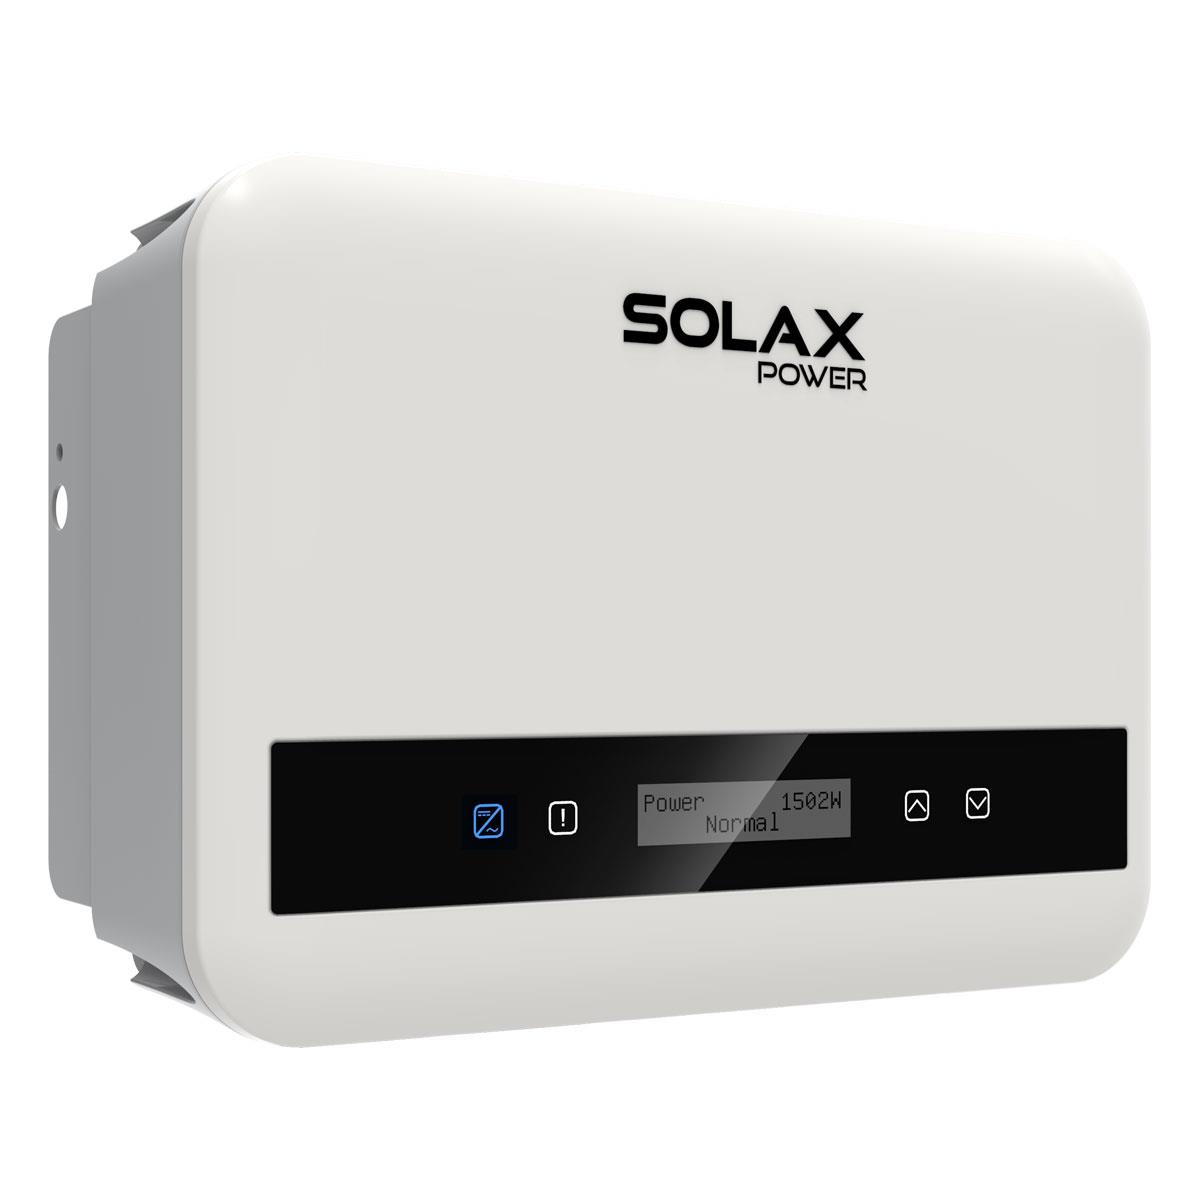 Solax 1,1kWp Mini PV-Anlage mit X1 G4 und 1200W Solarpanele inkl. WiFi